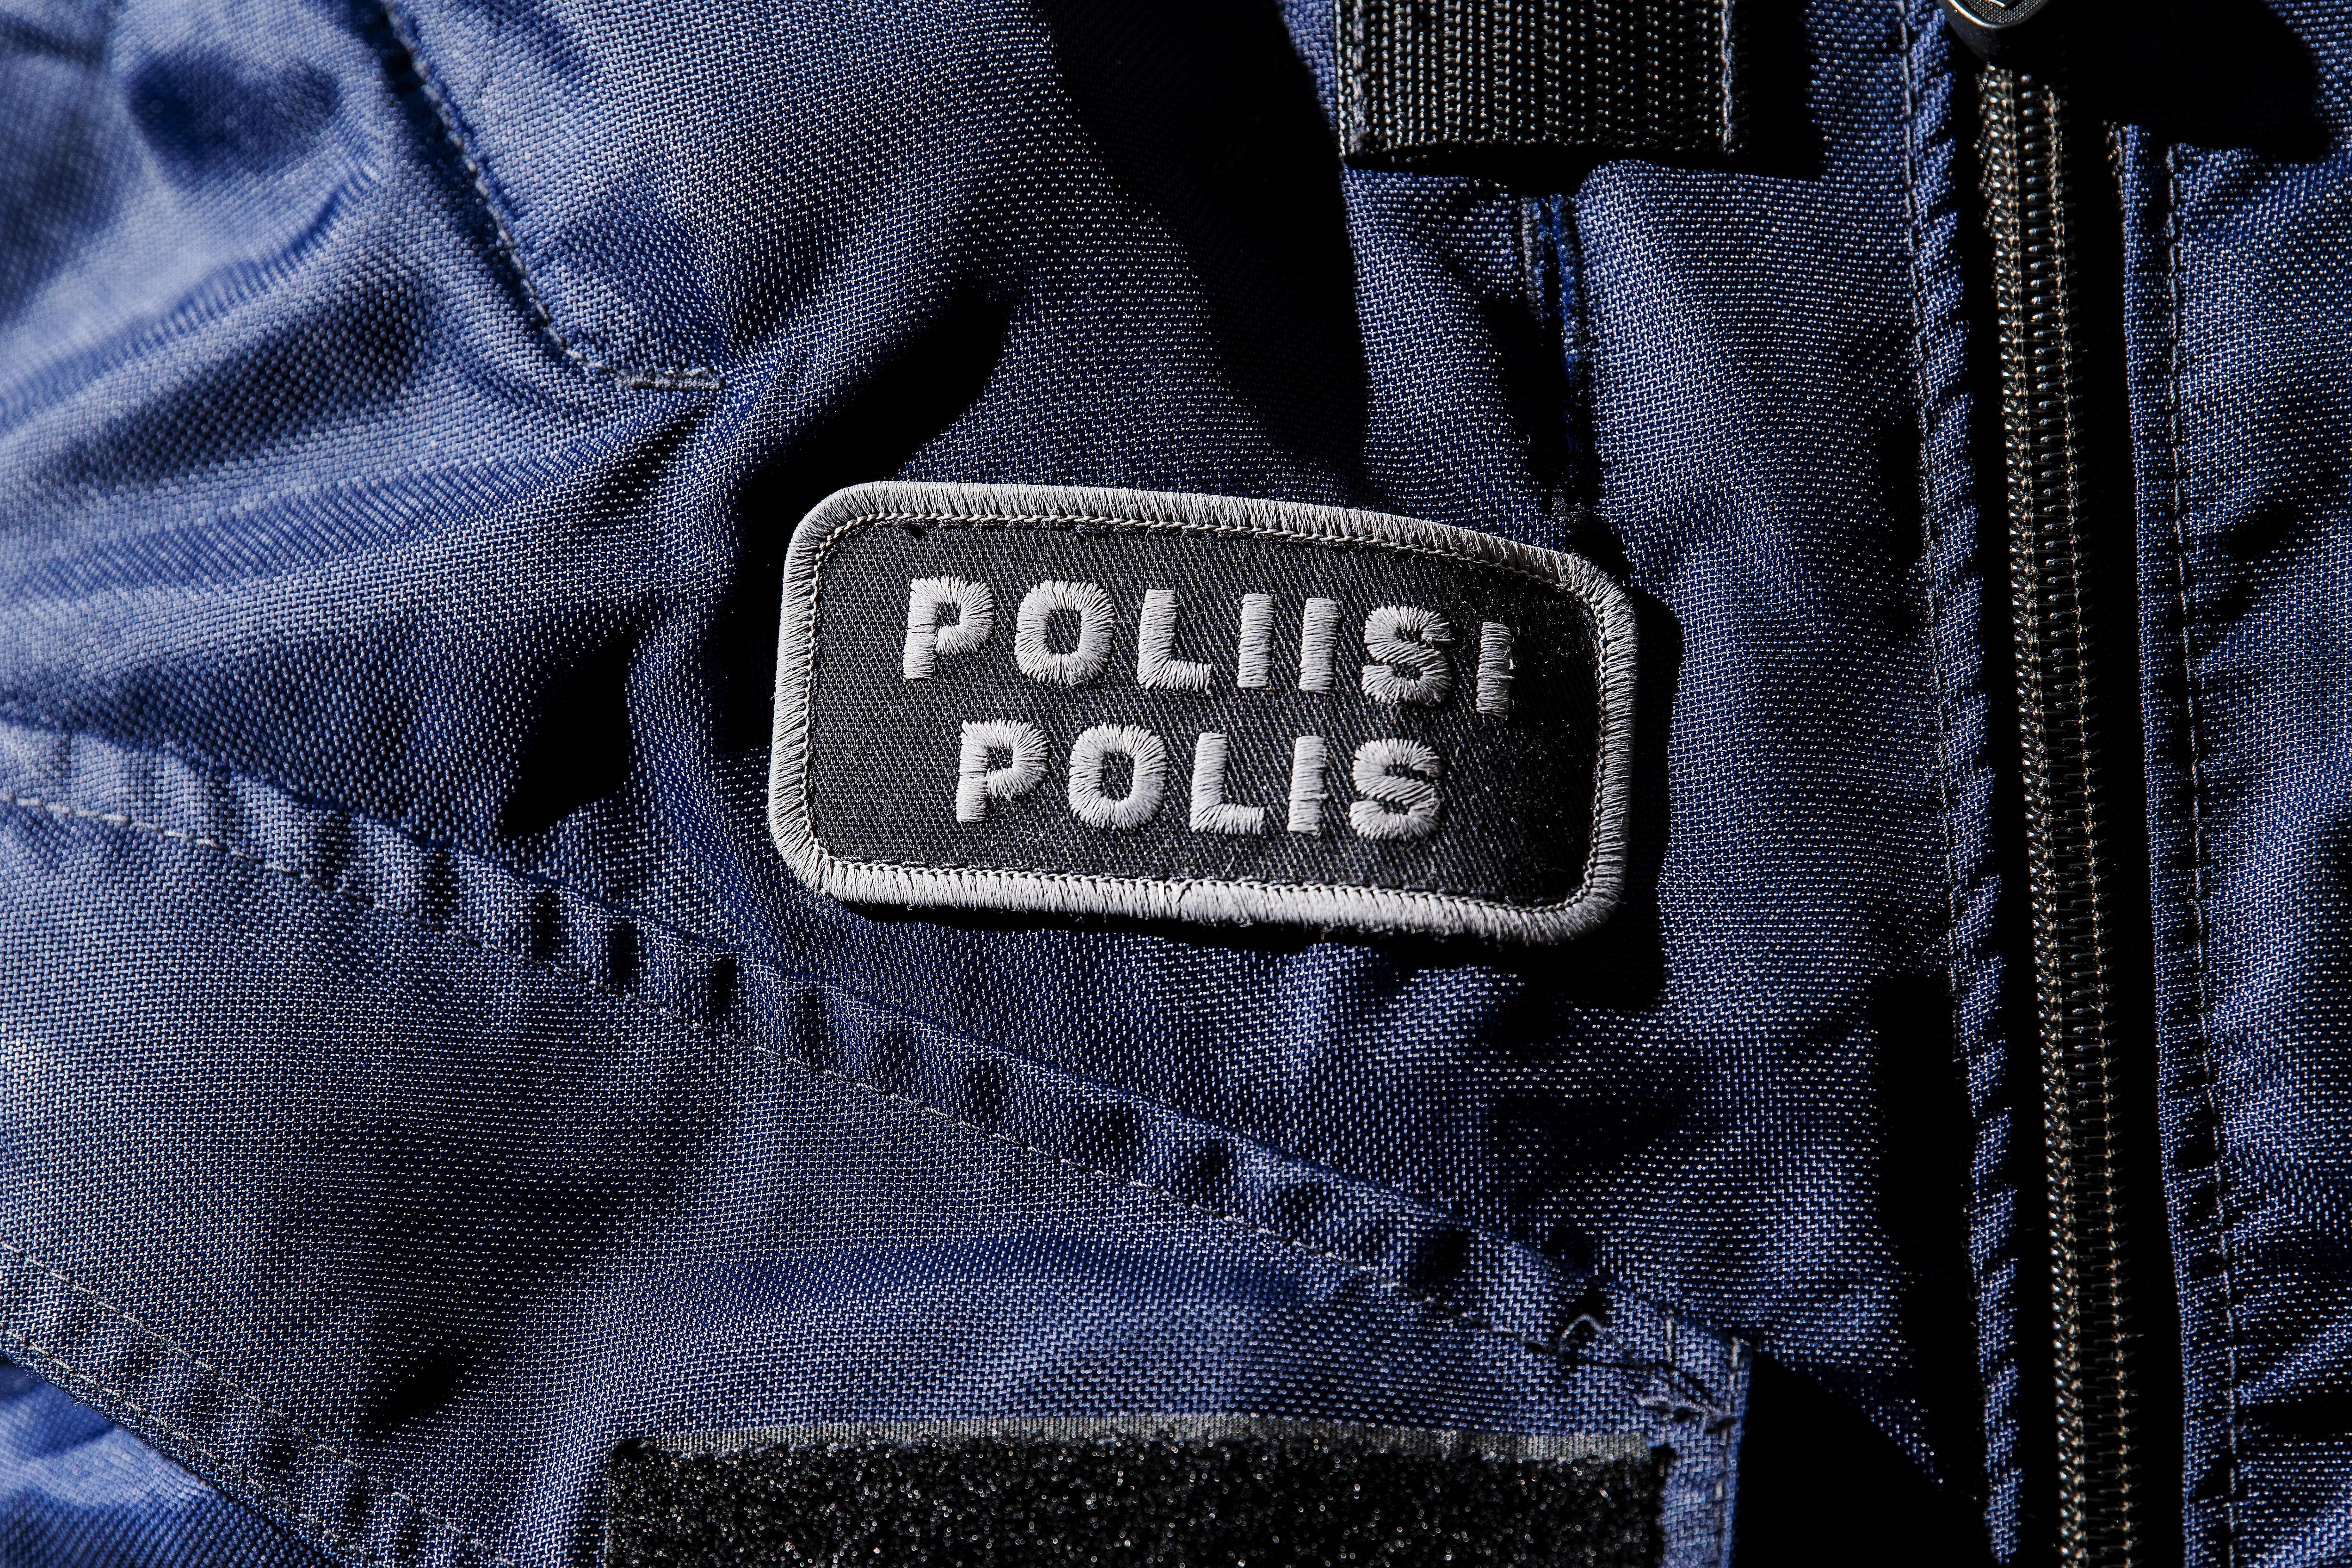 Die Polizei von Turku verdächtigt den messerschwingenden Mann des versuchten Mordes